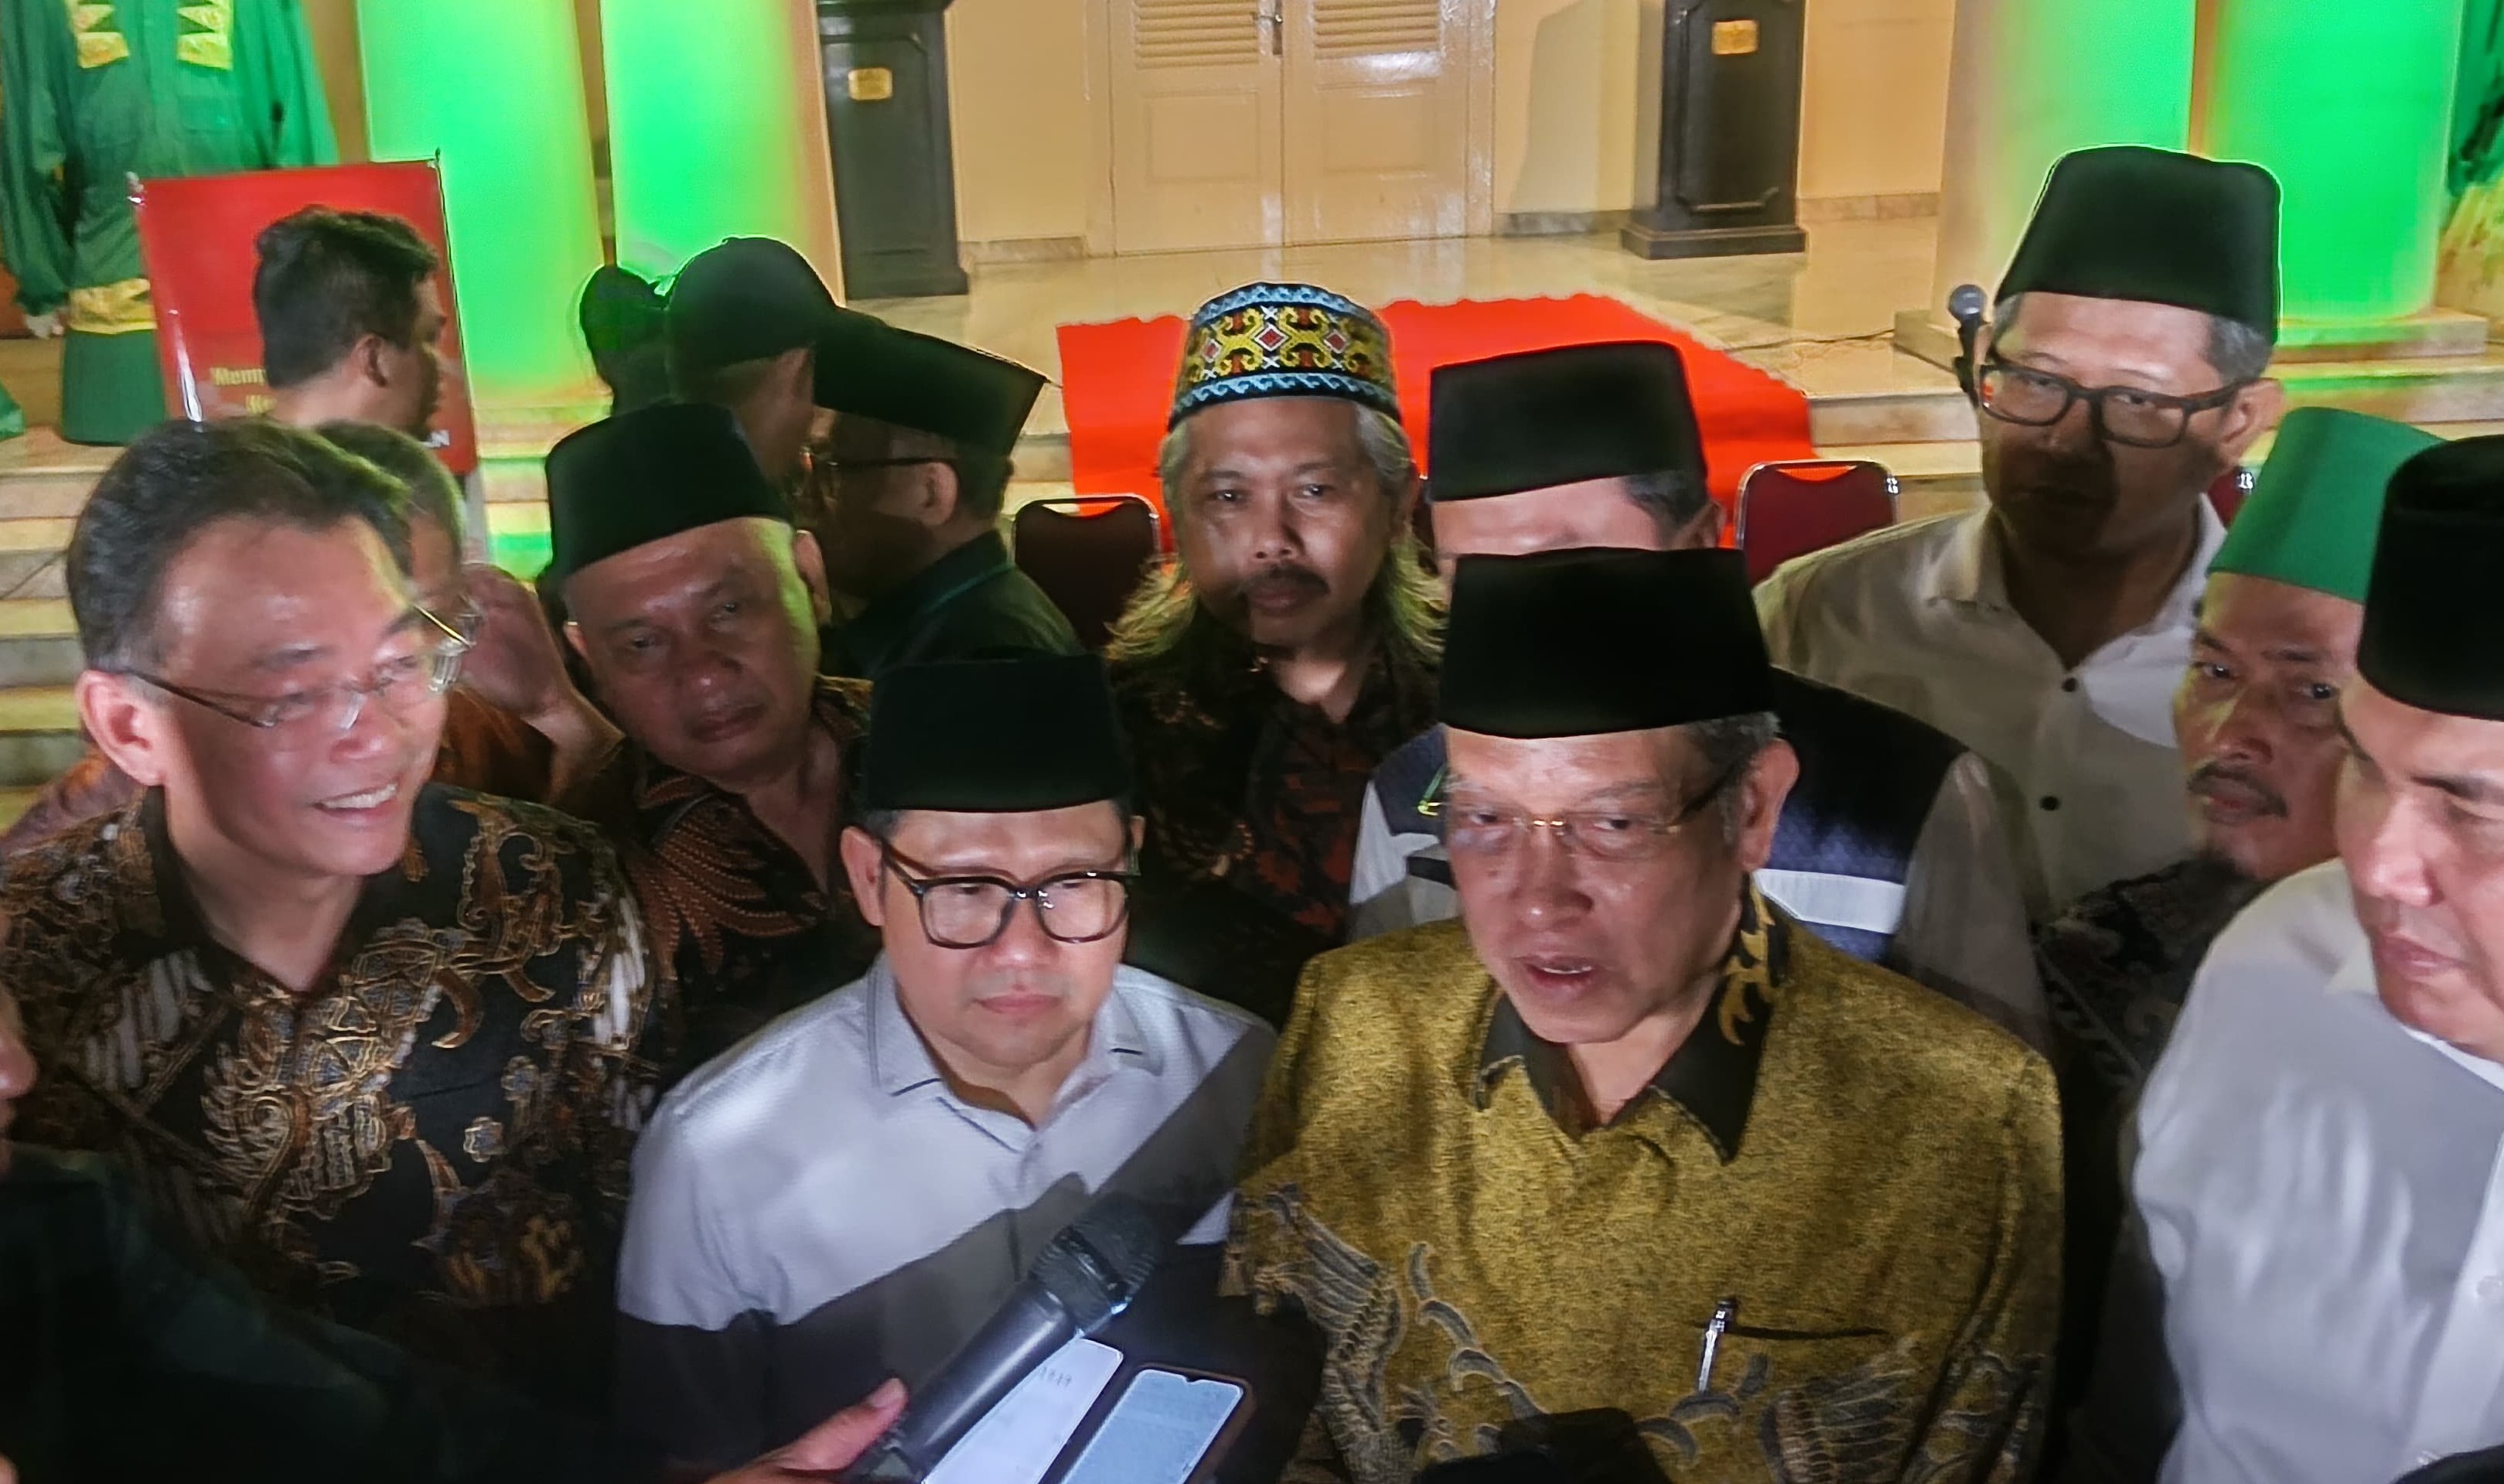 Momen Tokoh NU Sapa Hangat Balon Anggota DPD RI Lampung di Event INF: Mudah mudahan Berhasil